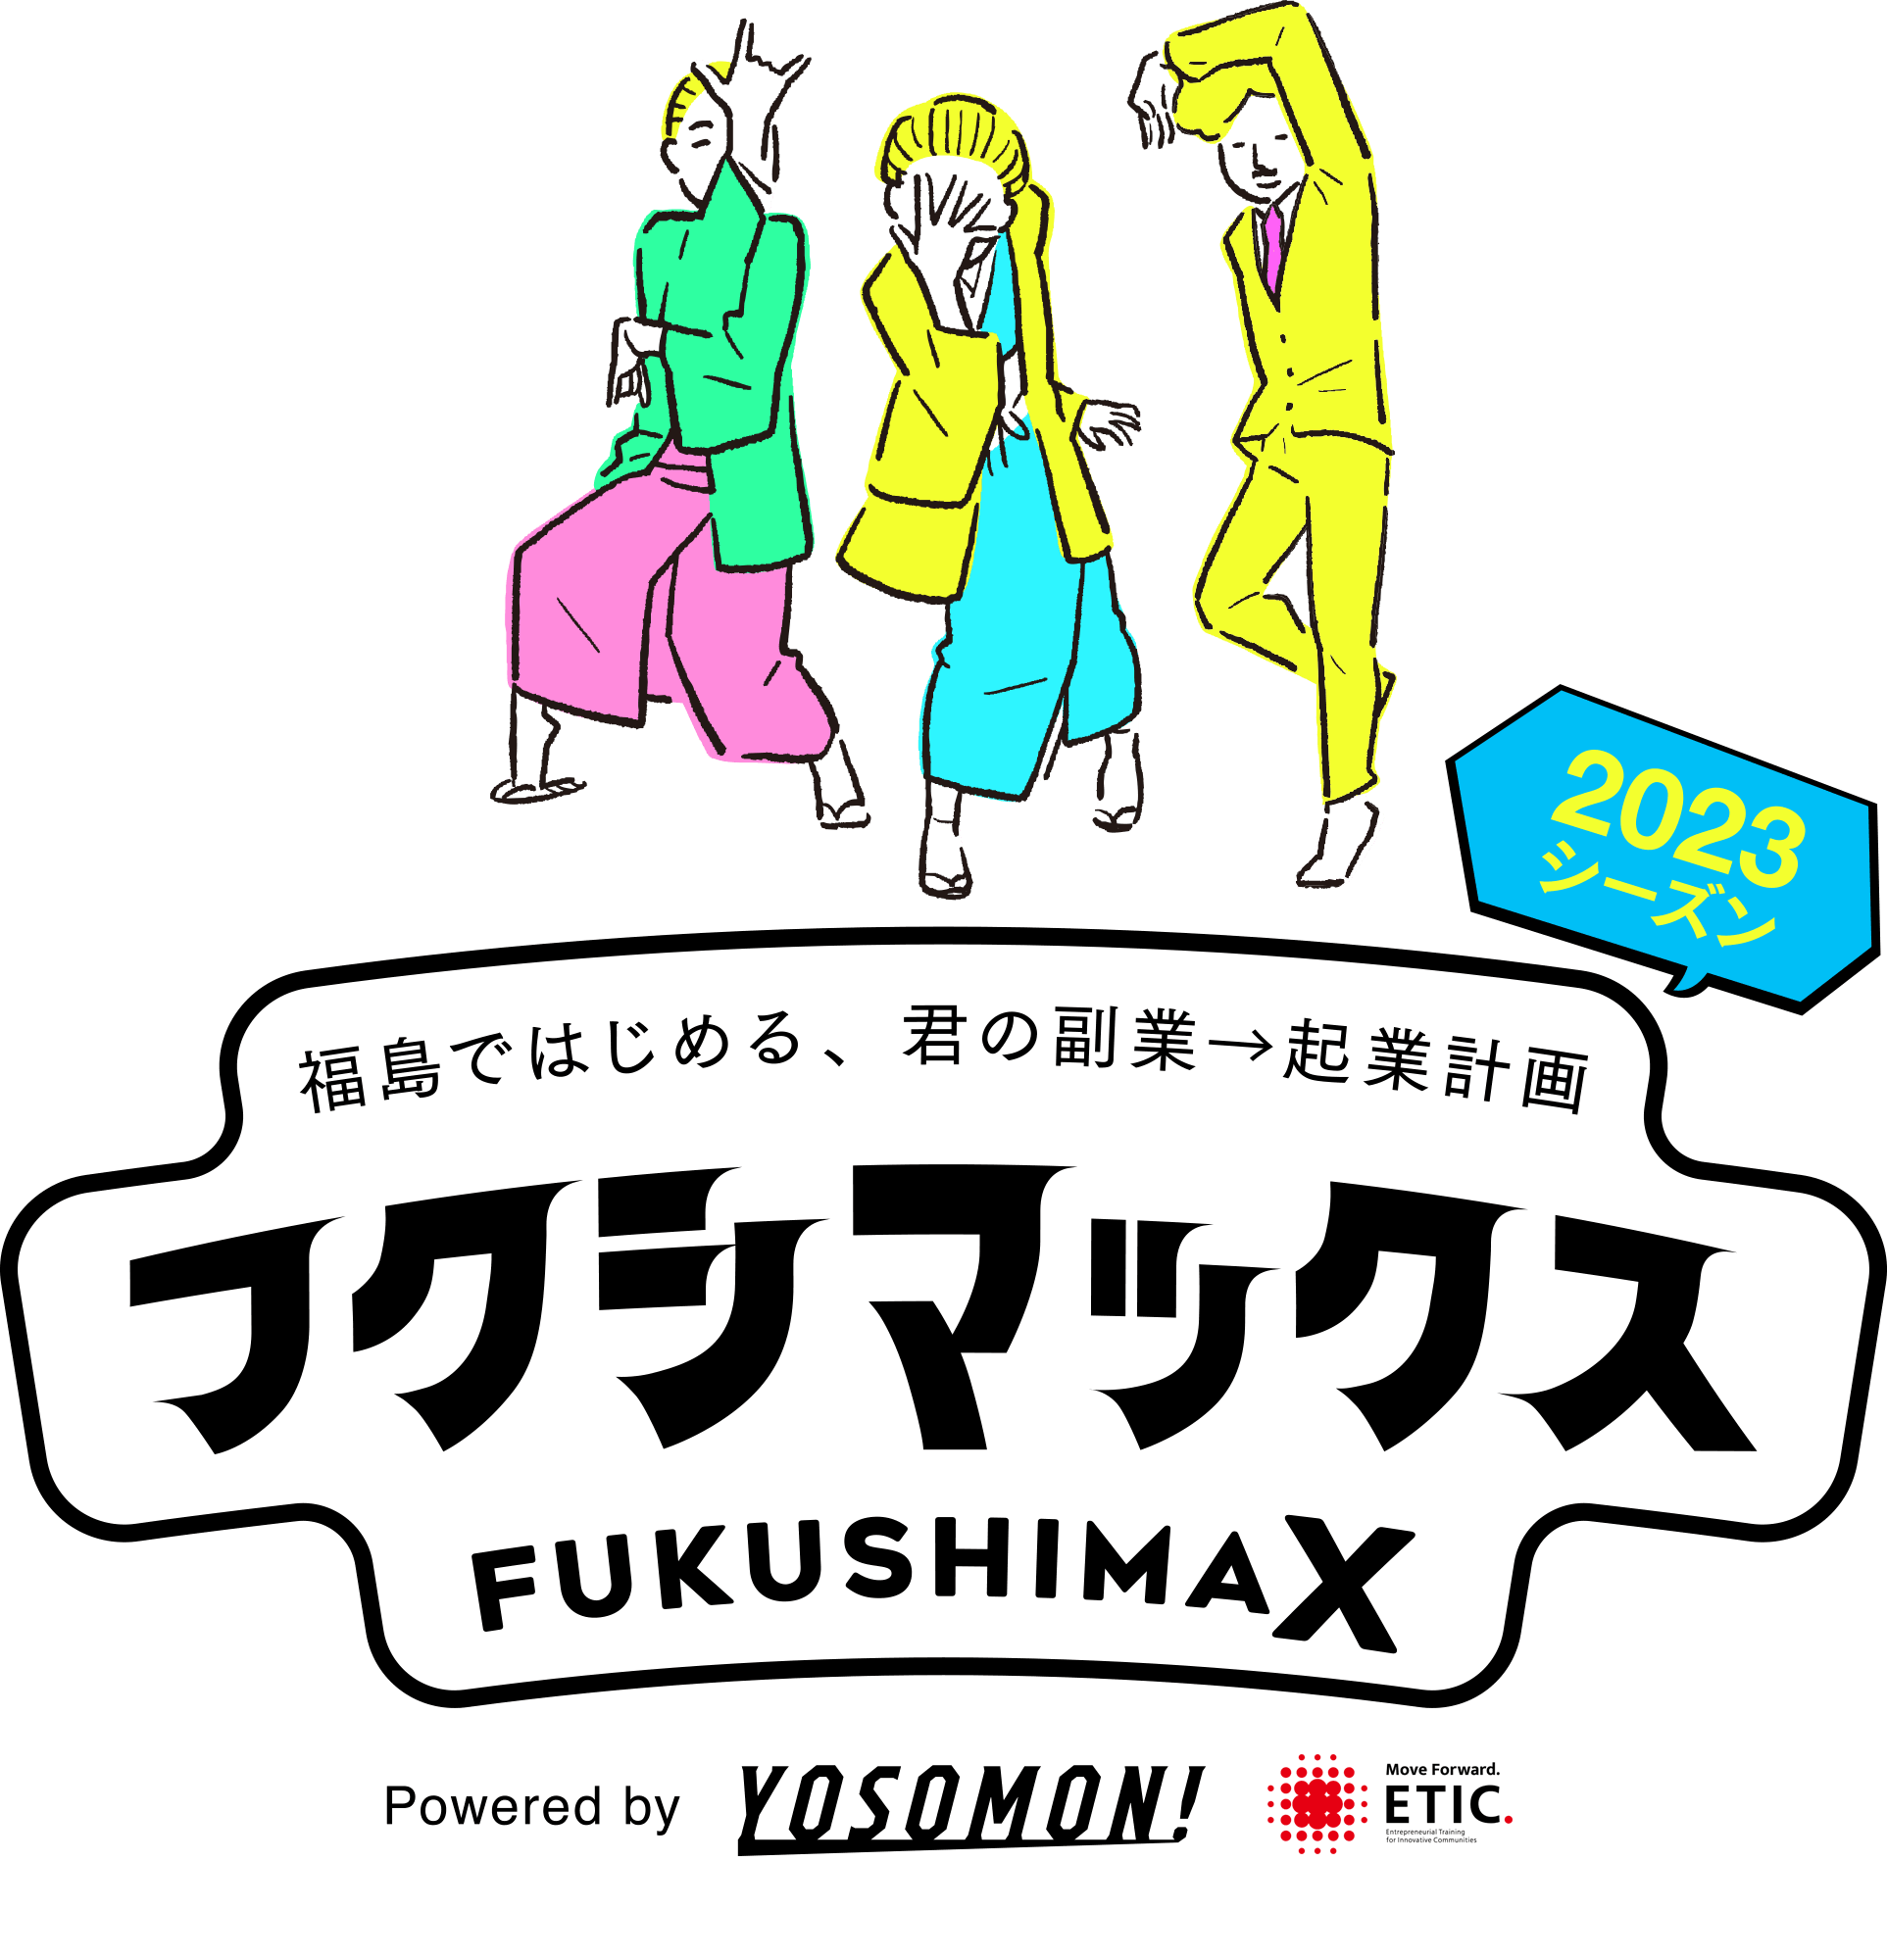 福島ではじめる、君の副業→起業計画「フクシマックス FUKUSHIMAX」